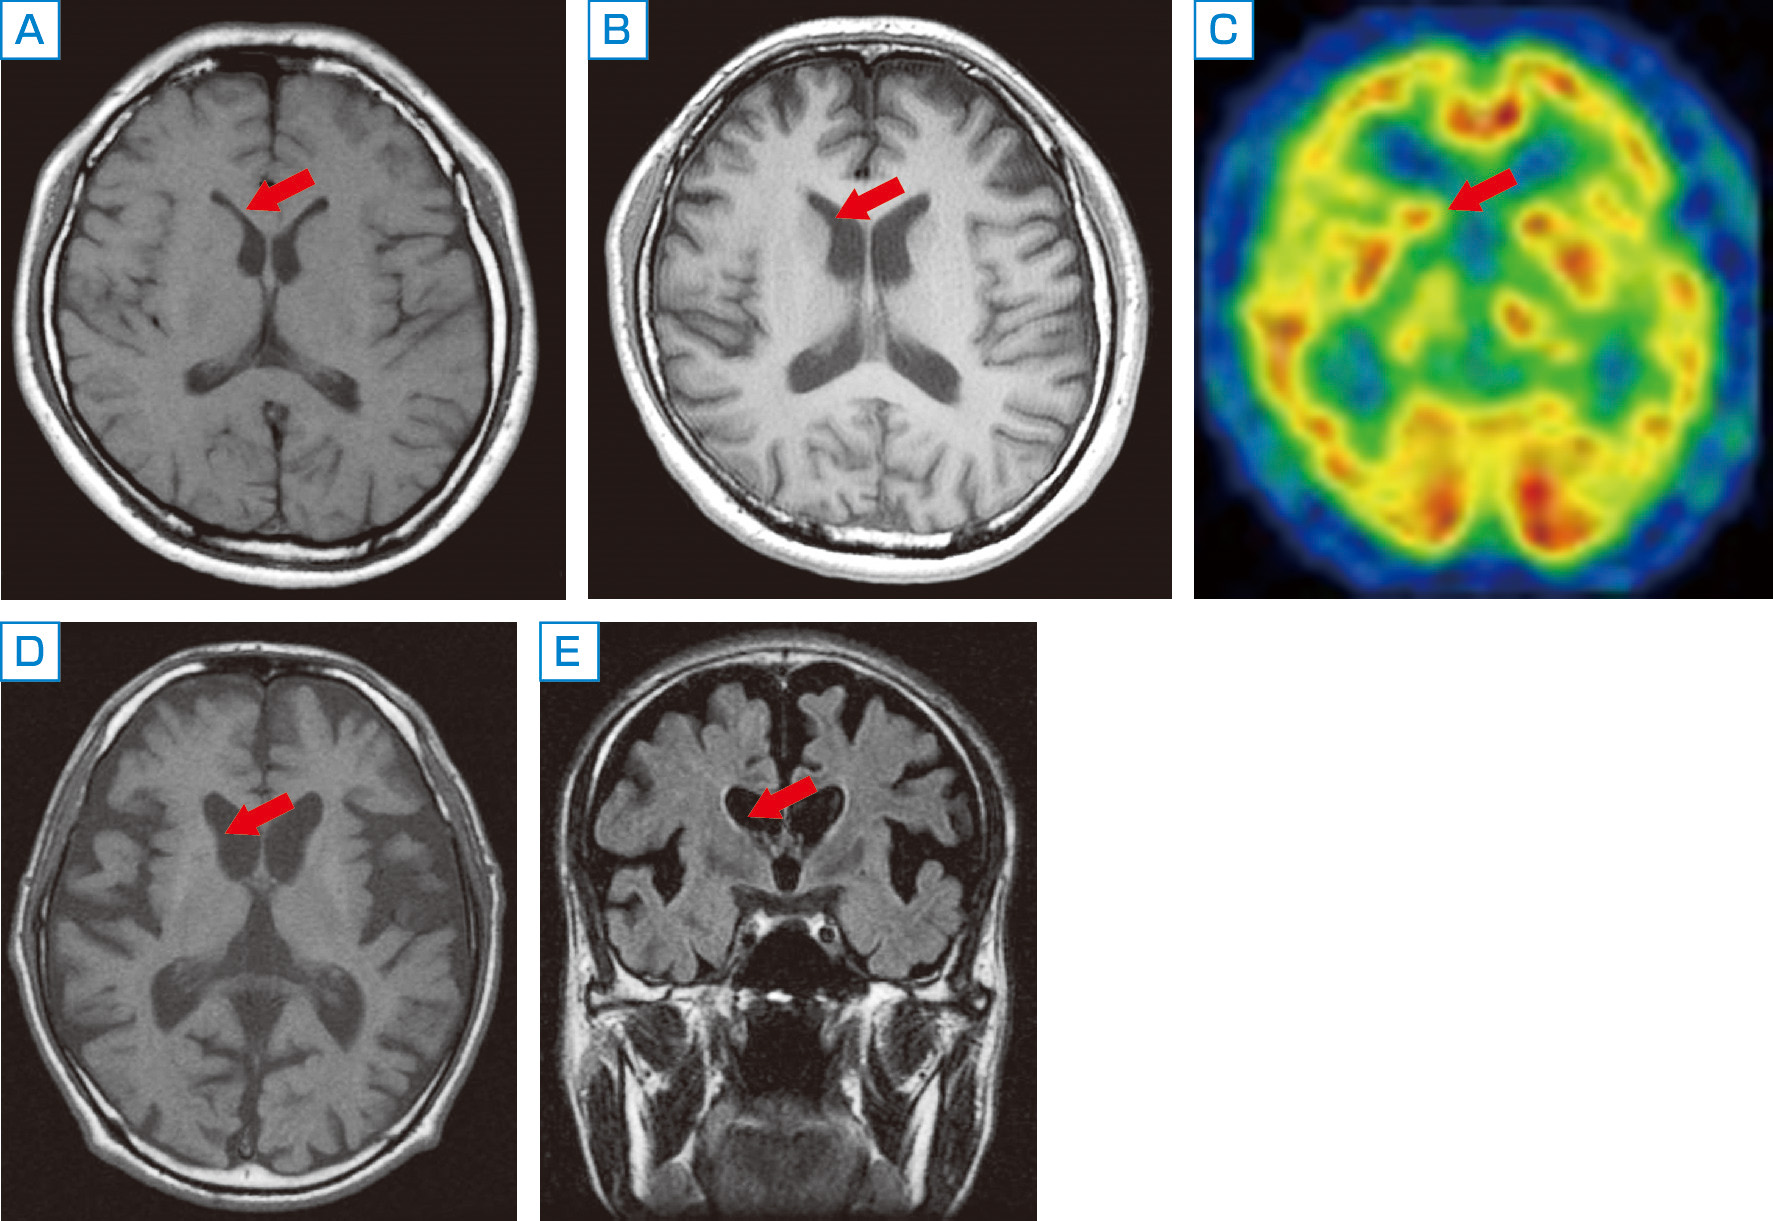 ⓔ図18-6-5　Huntington病患者の画像検査 A～C：伸長CAGリピート45回の同一患者．A：31歳時のMRI，B：41歳時のMRI．C：同時期の99mTc ECD SPECT．31歳時は無症候，41歳は発症初期．MRIでは若干の尾状核の萎縮が認められる．SPECTでは，両側の前頭葉から側頭葉の軽ないし中等度の集積低下と，右側優位に両側線条体 (尾状核および被殻) の軽ないし中等度の集積低下が認められる． D, E：経過約10年，伸長CAGリピート40回，55歳の患者のMRI．D：水平断，E：冠状断．顕著な線条体 (特に尾状核) と大脳皮質の萎縮，脳室 (第3脳室，側脳室) の拡大が認められる．